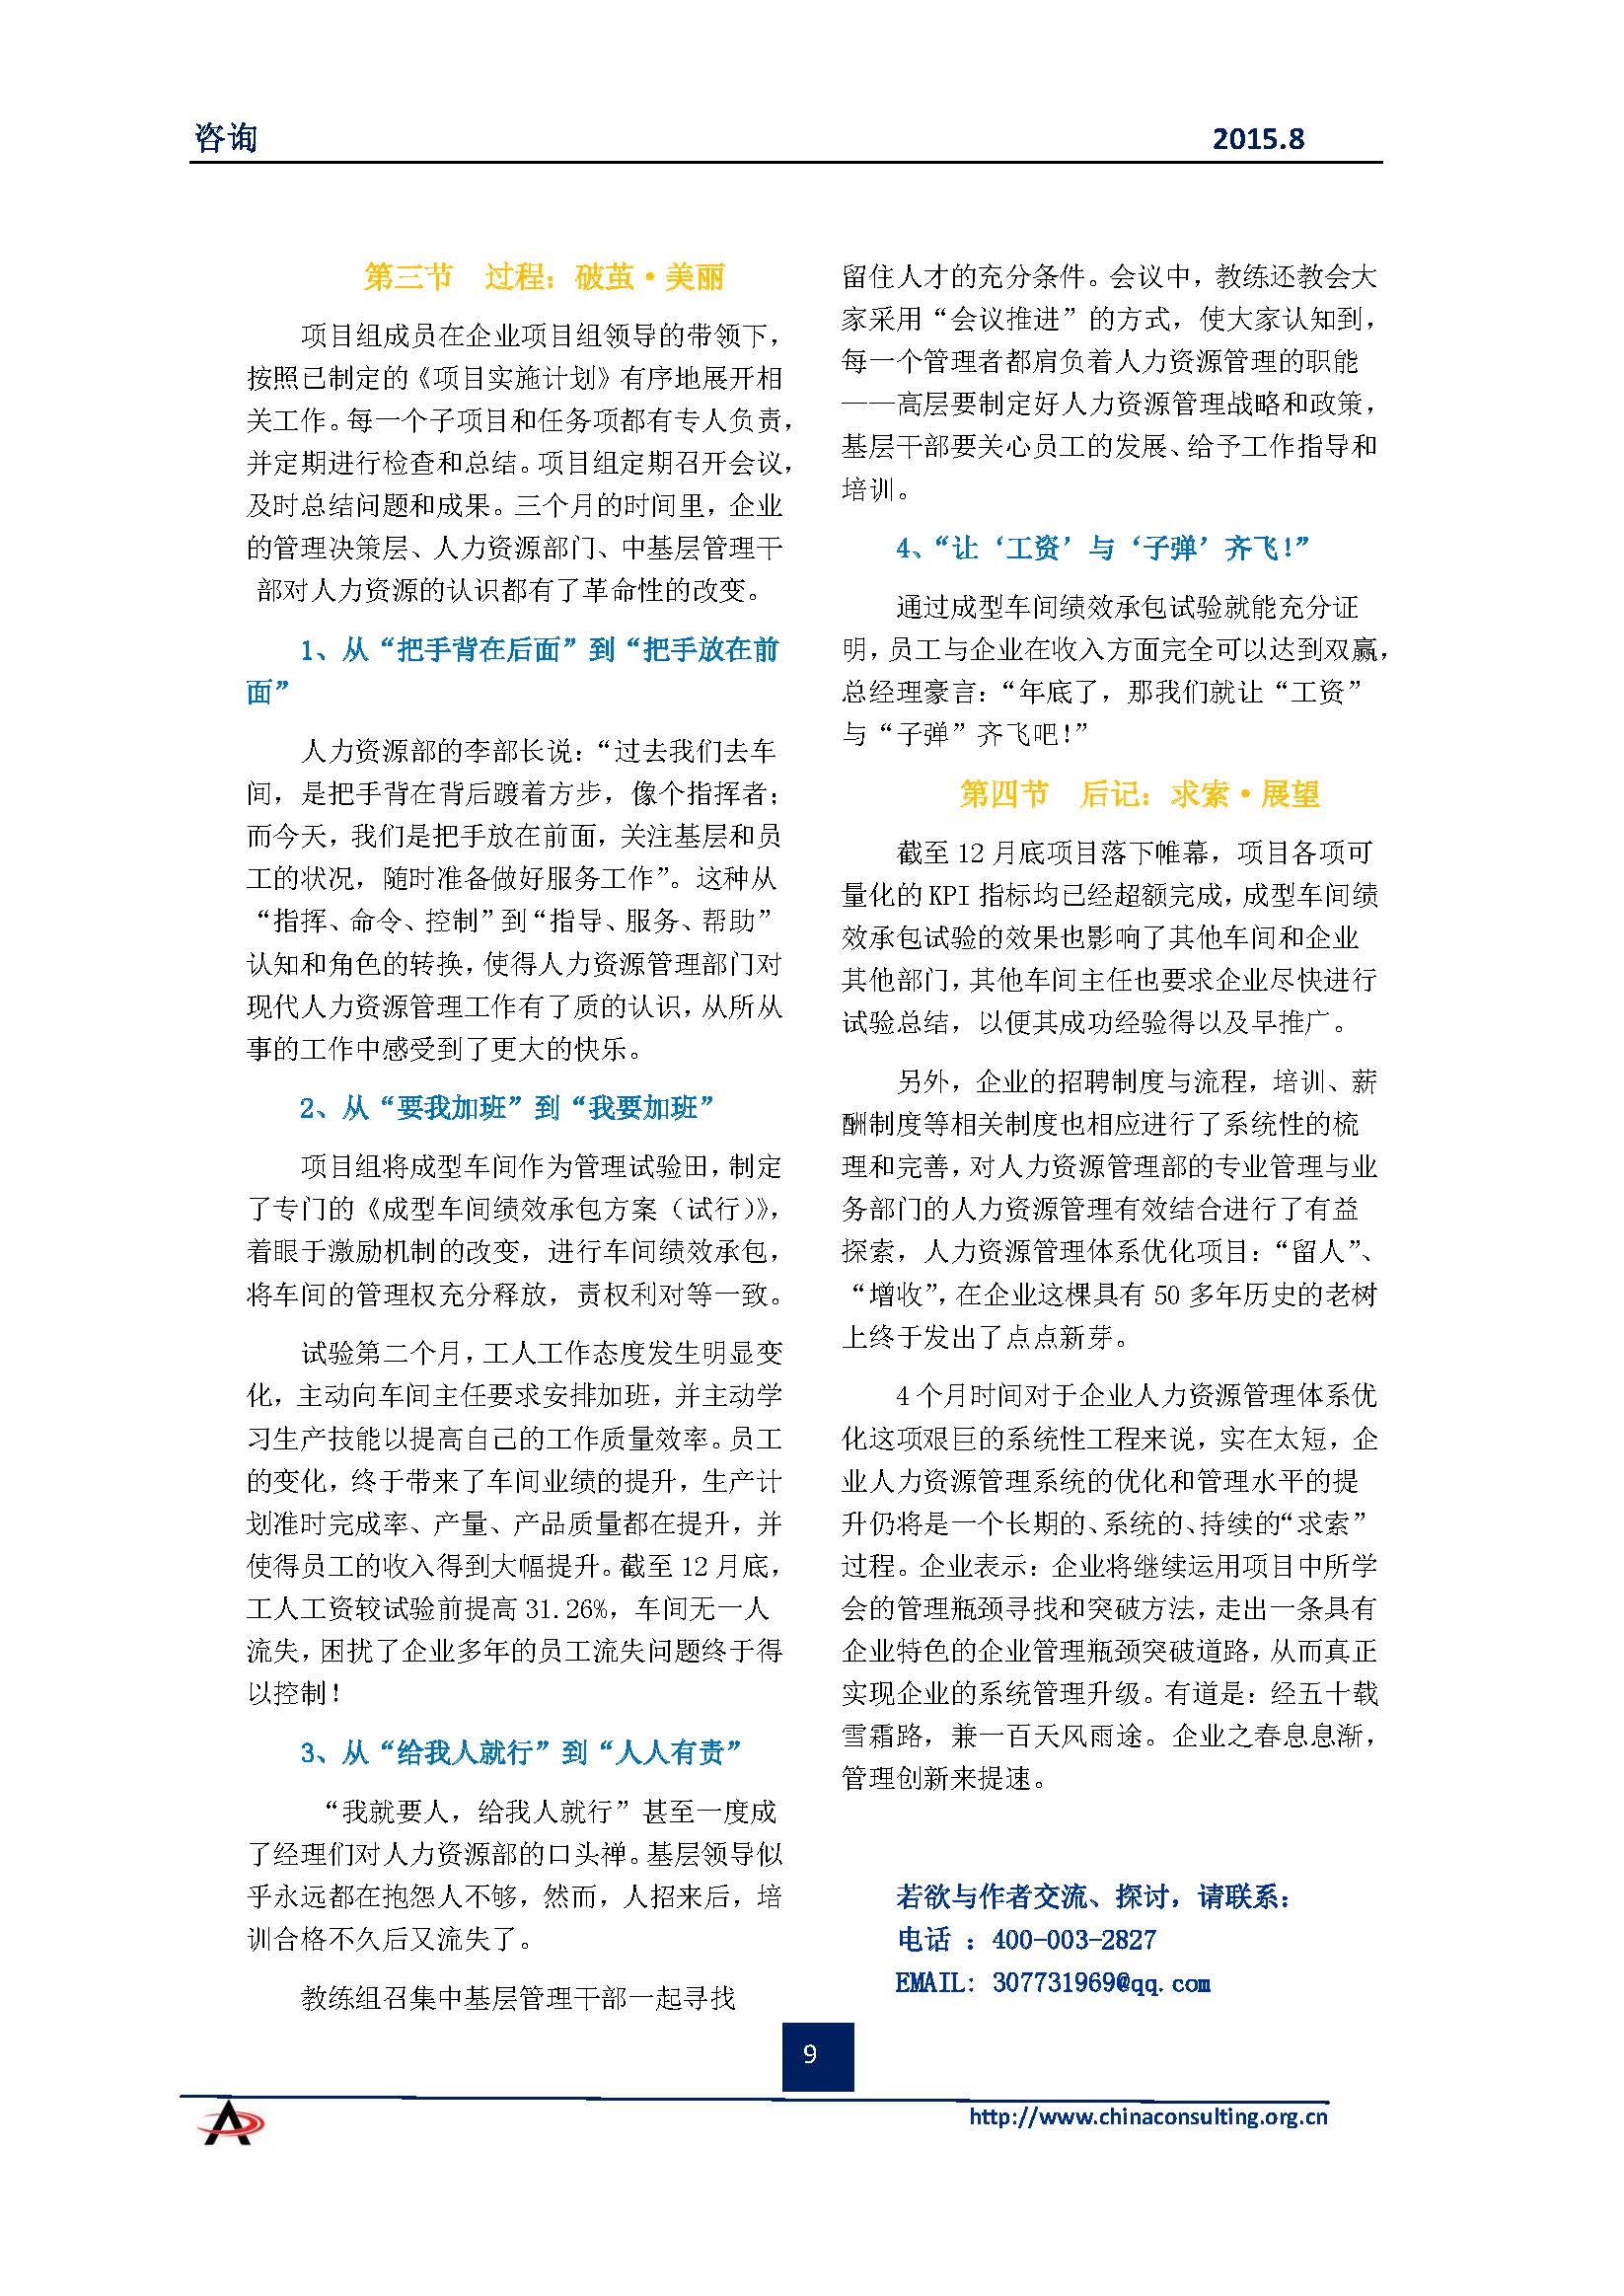 中国科技咨询协会会刊（第四十期）初稿_页面_11.jpg